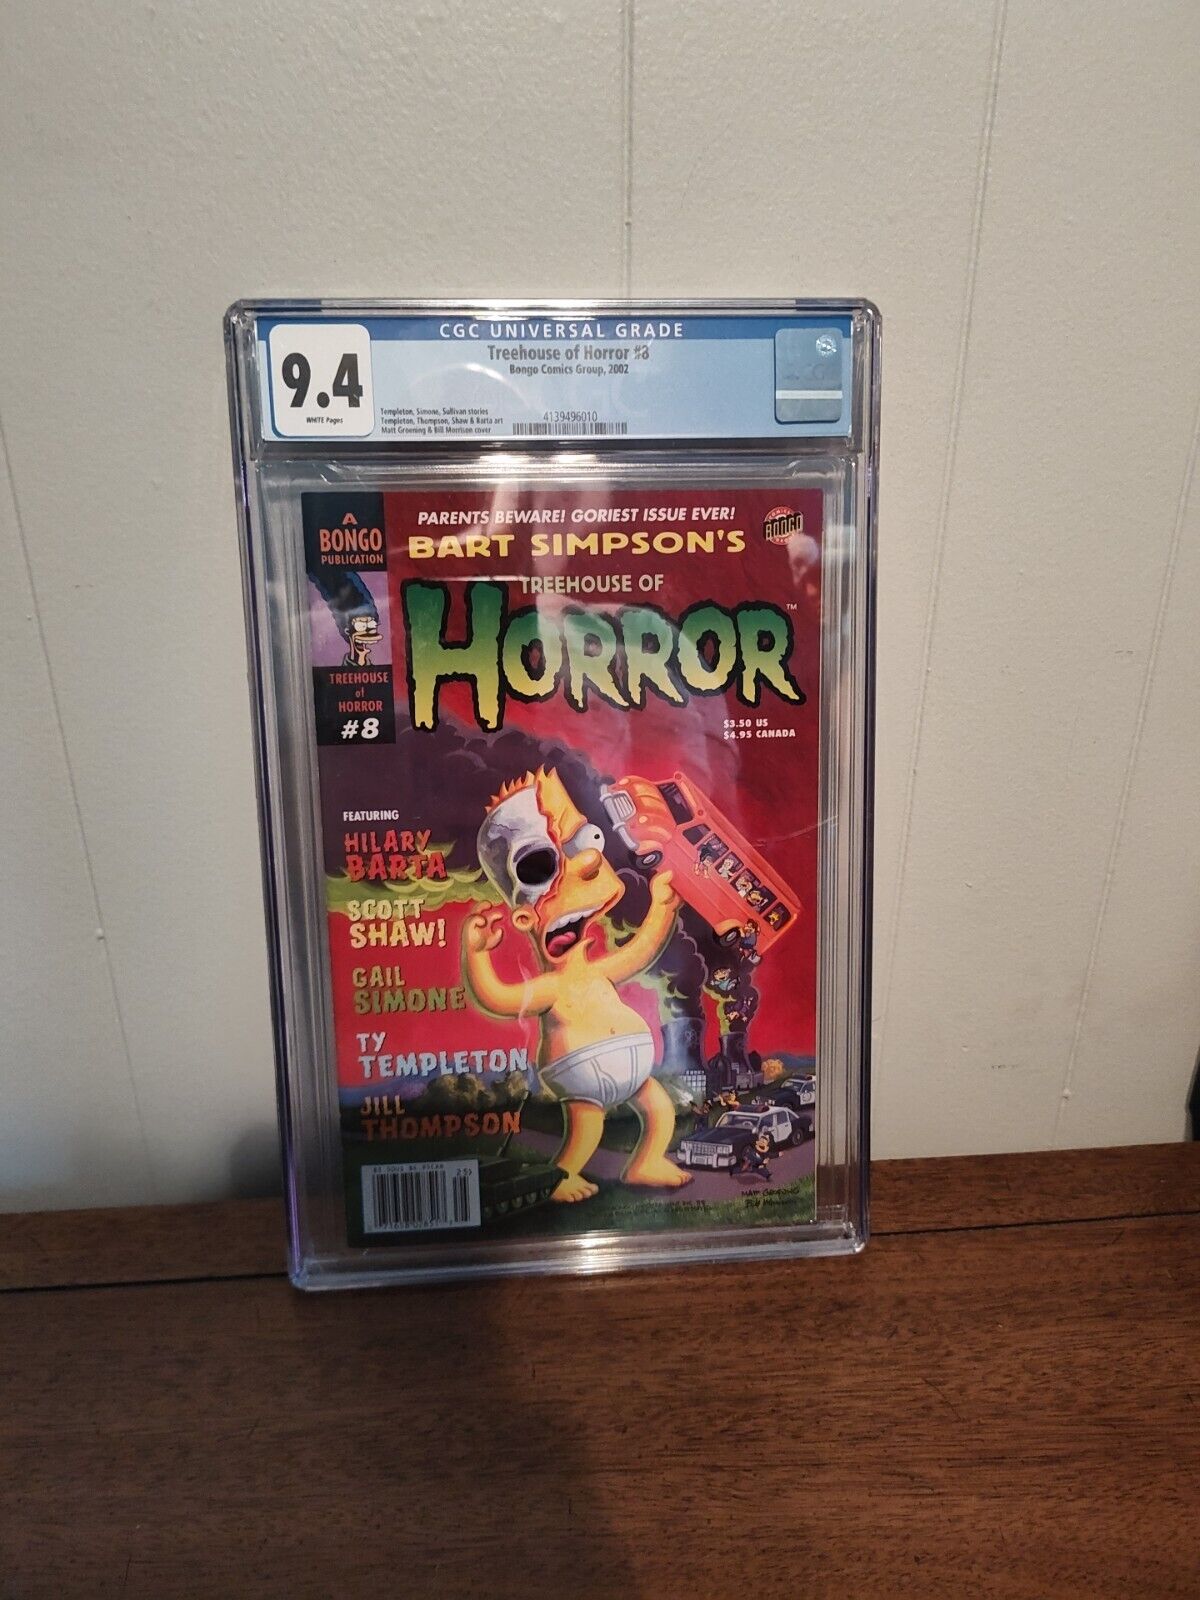 2002 Simpsons Treehouse Of Horror #8 Cgc Comics 9.4